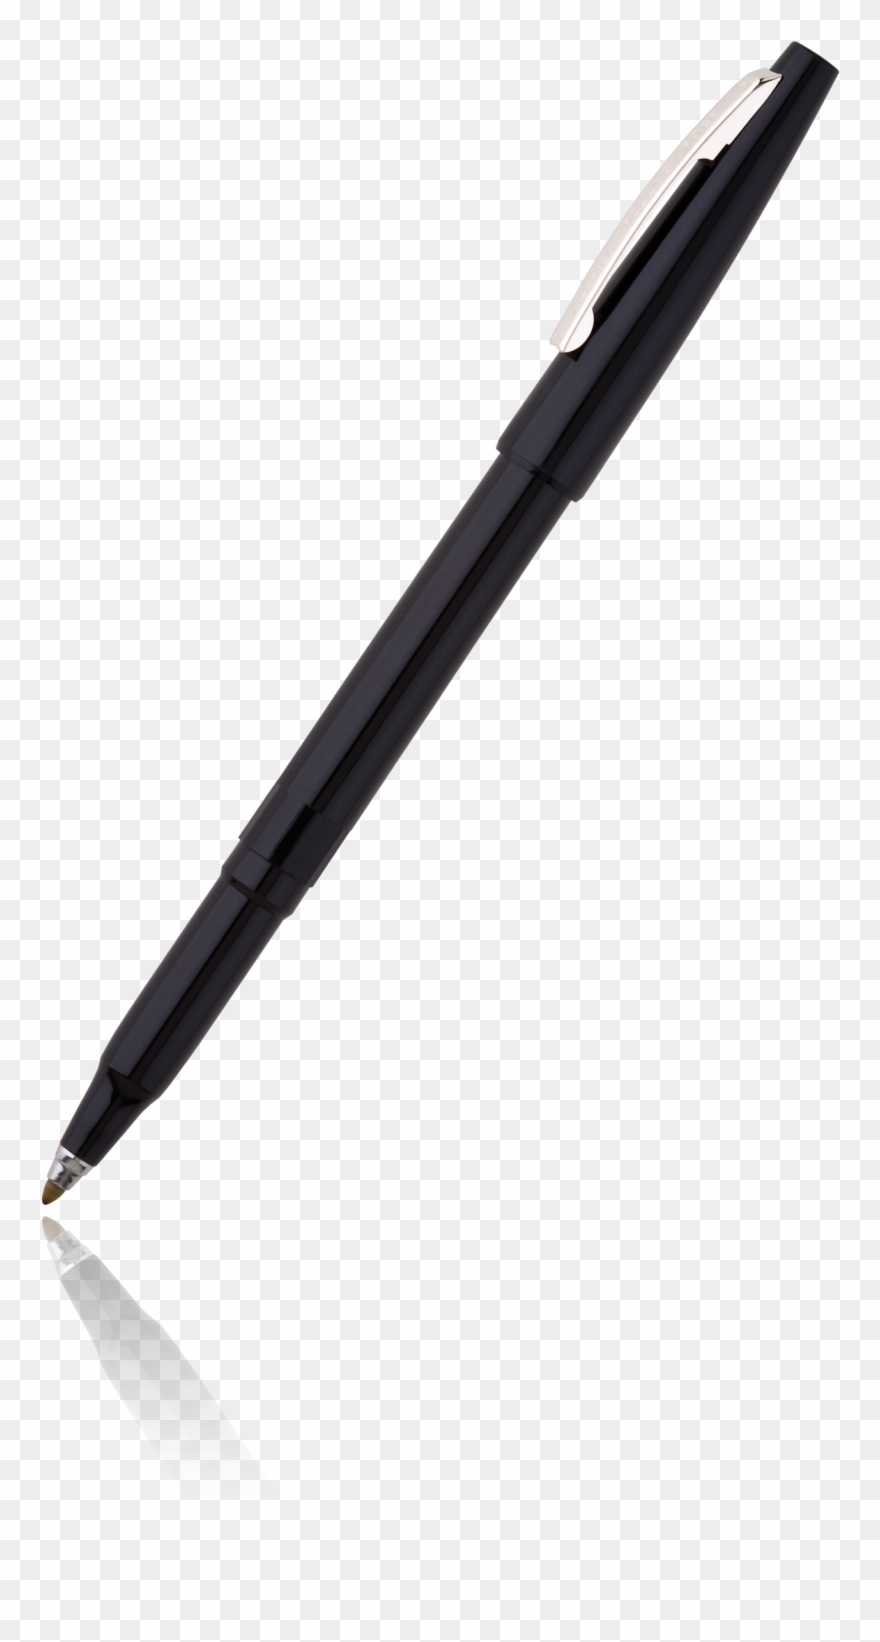 Clipart pen pen.